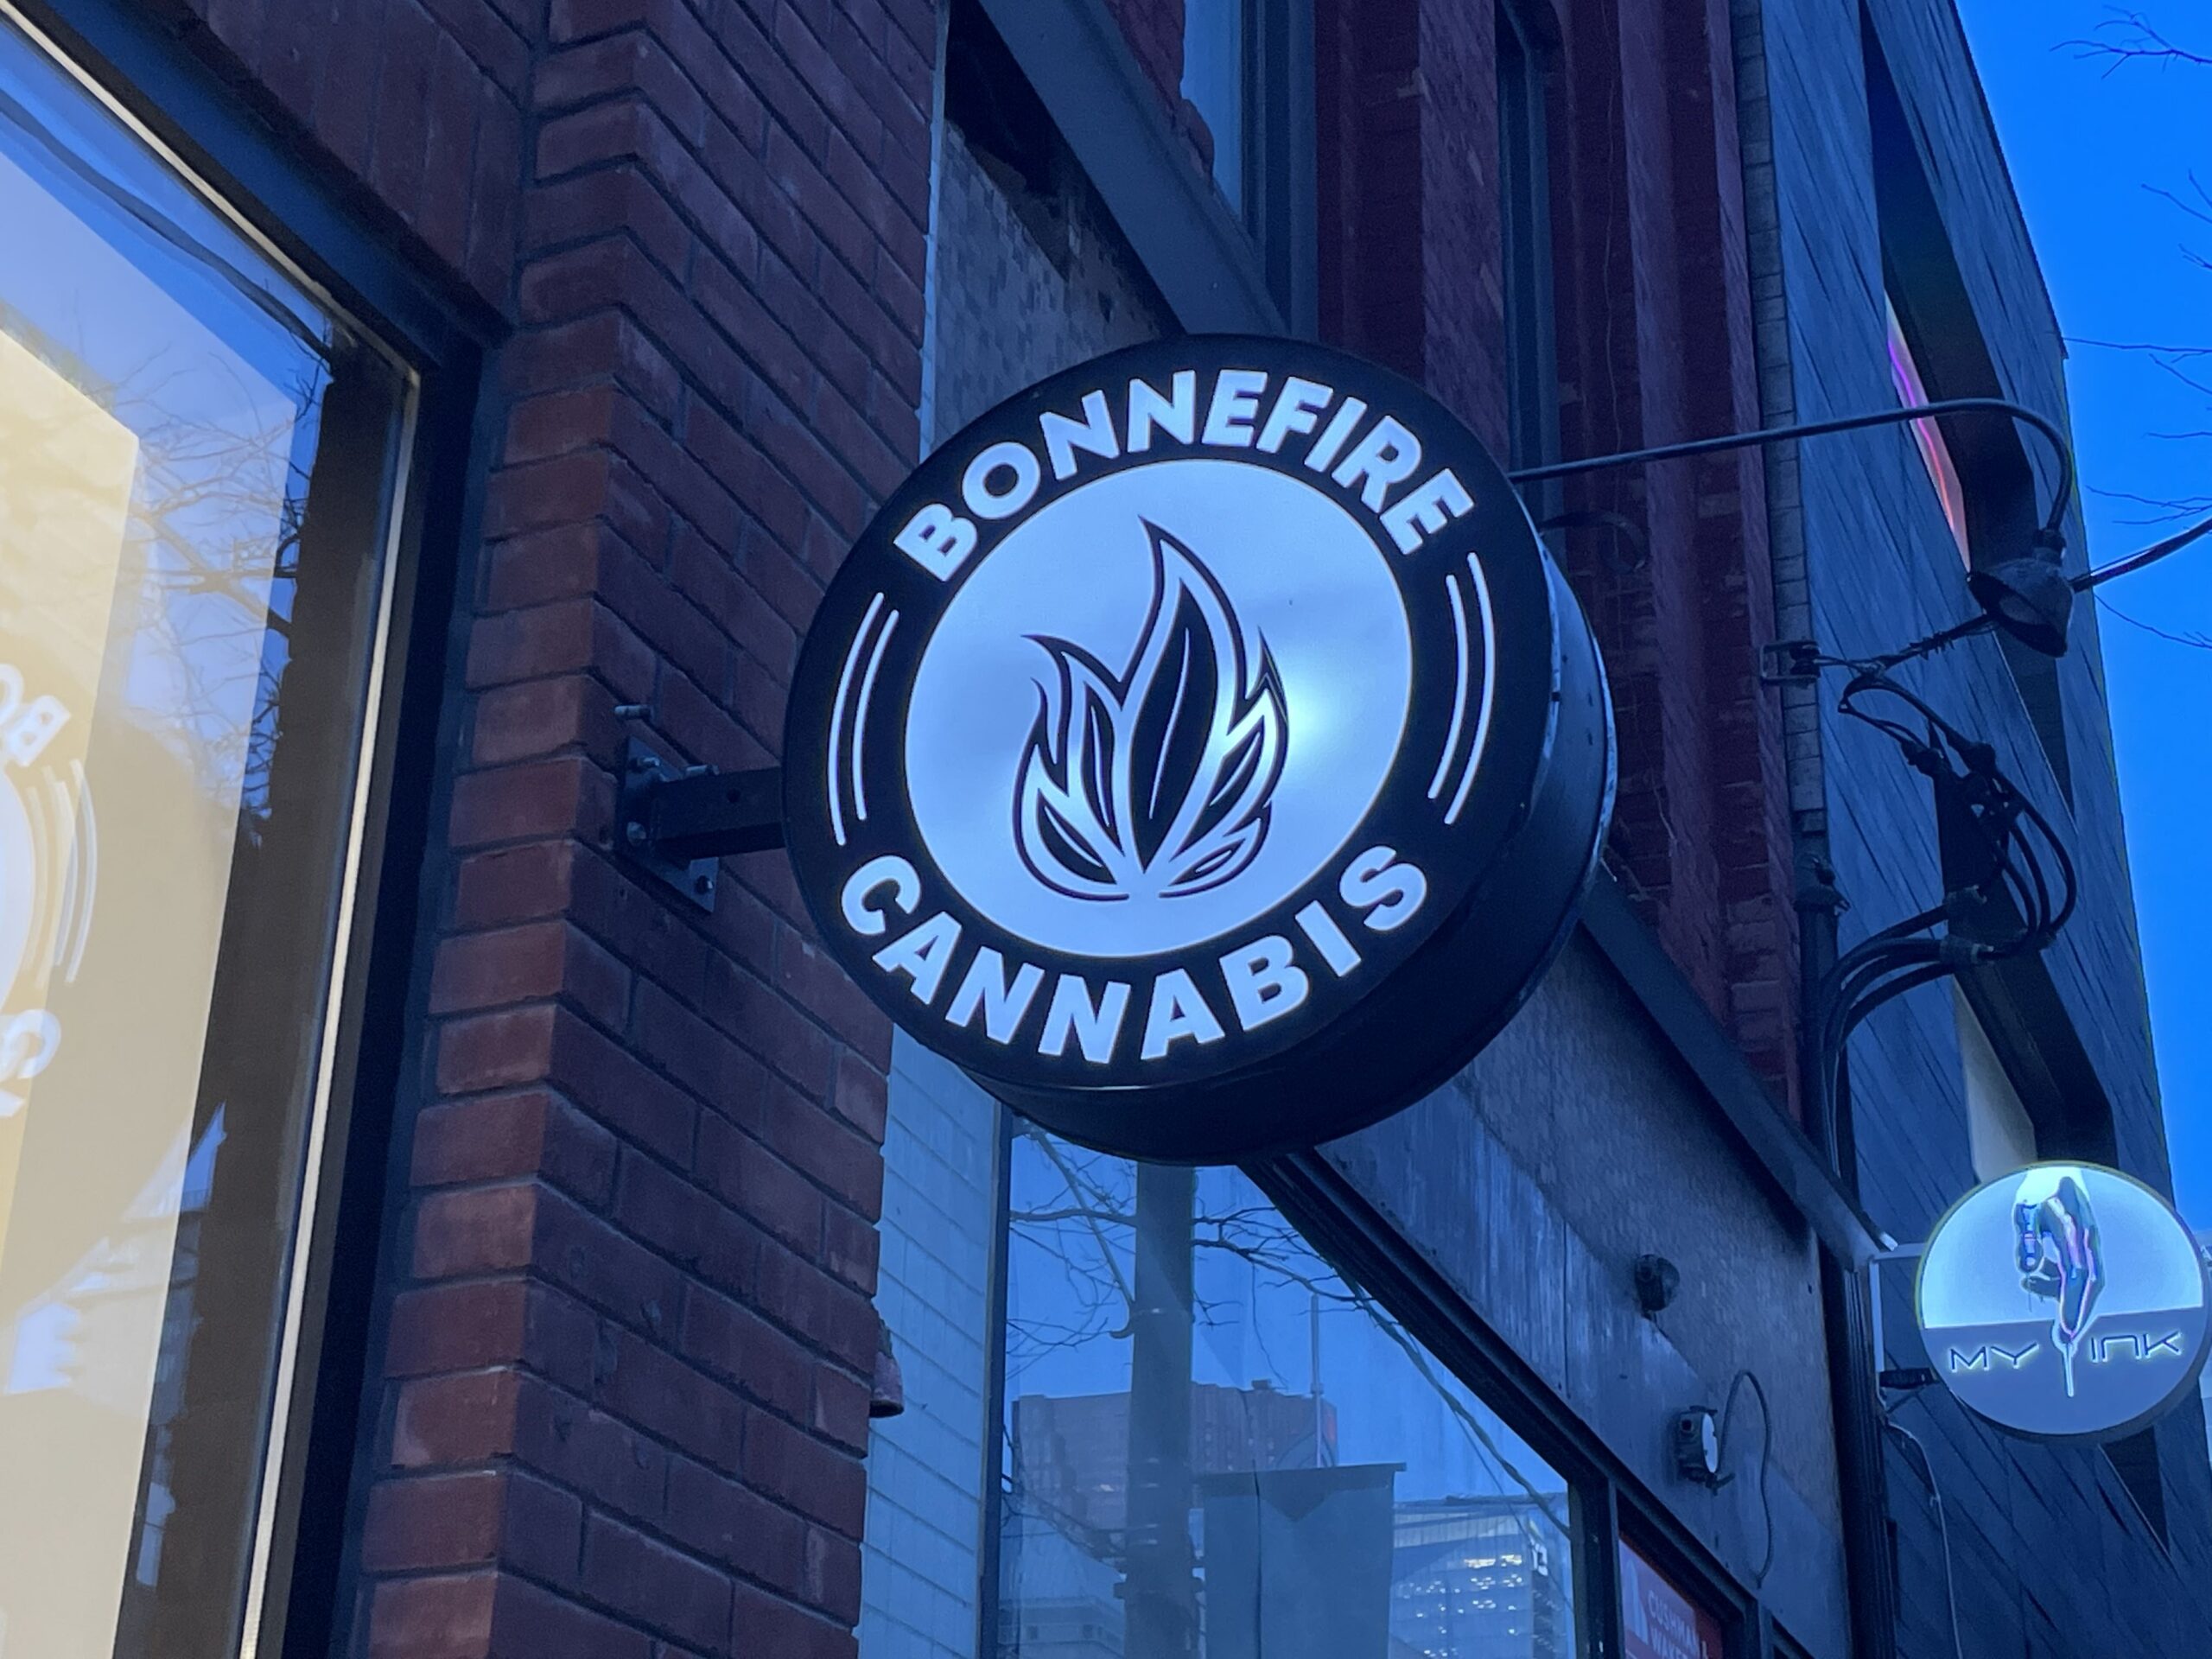 bonnefire cannabis' shop